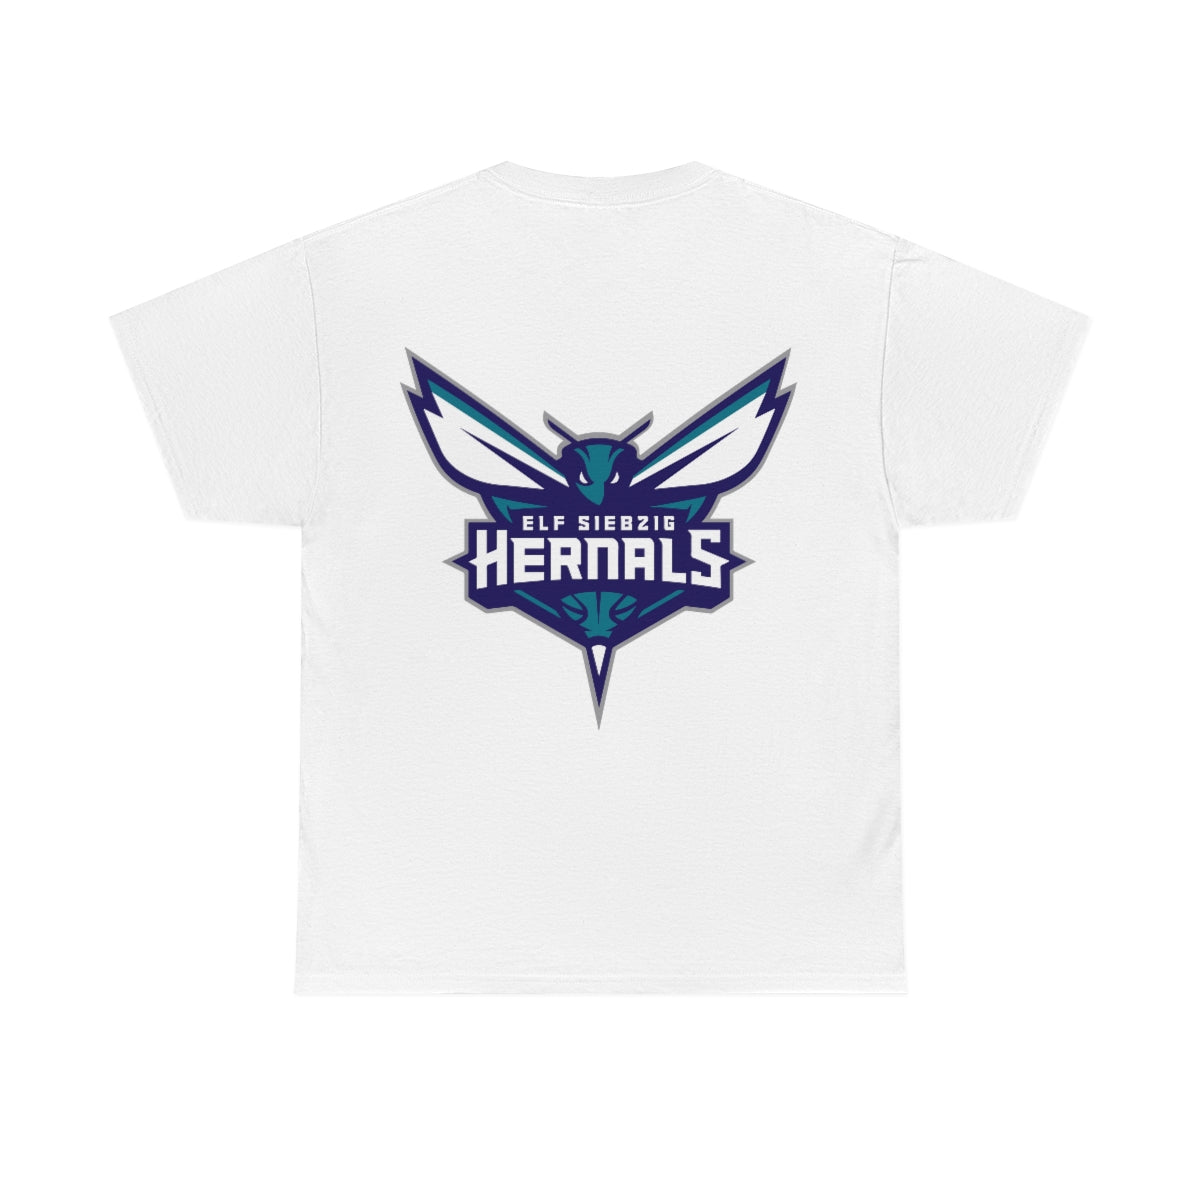 Hoodz T-shirt - 1170 Hernals